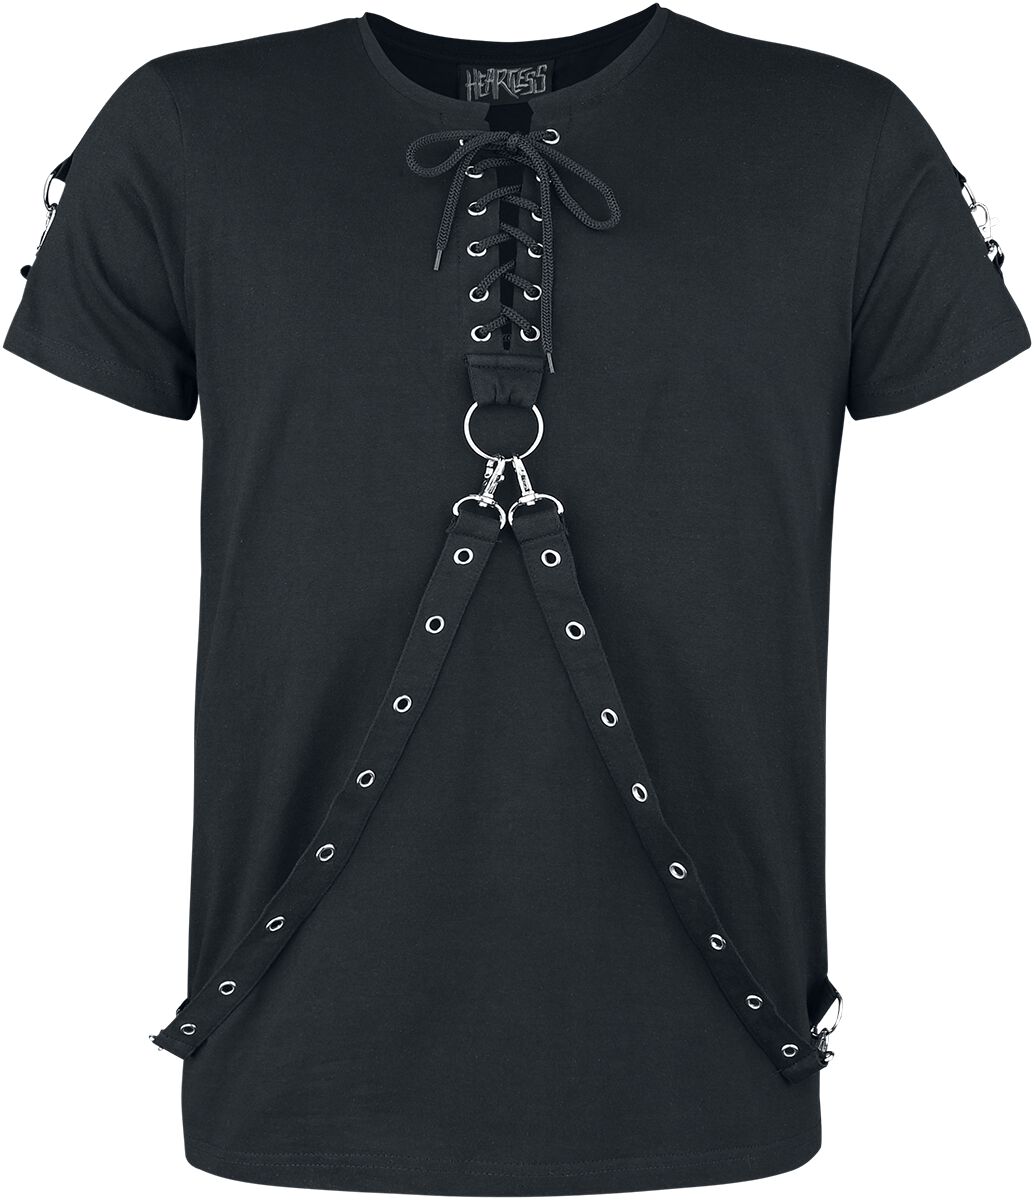 Heartless - Gothic T-Shirt - Einer Top - S bis 4XL - für Männer - Größe XXL - schwarz